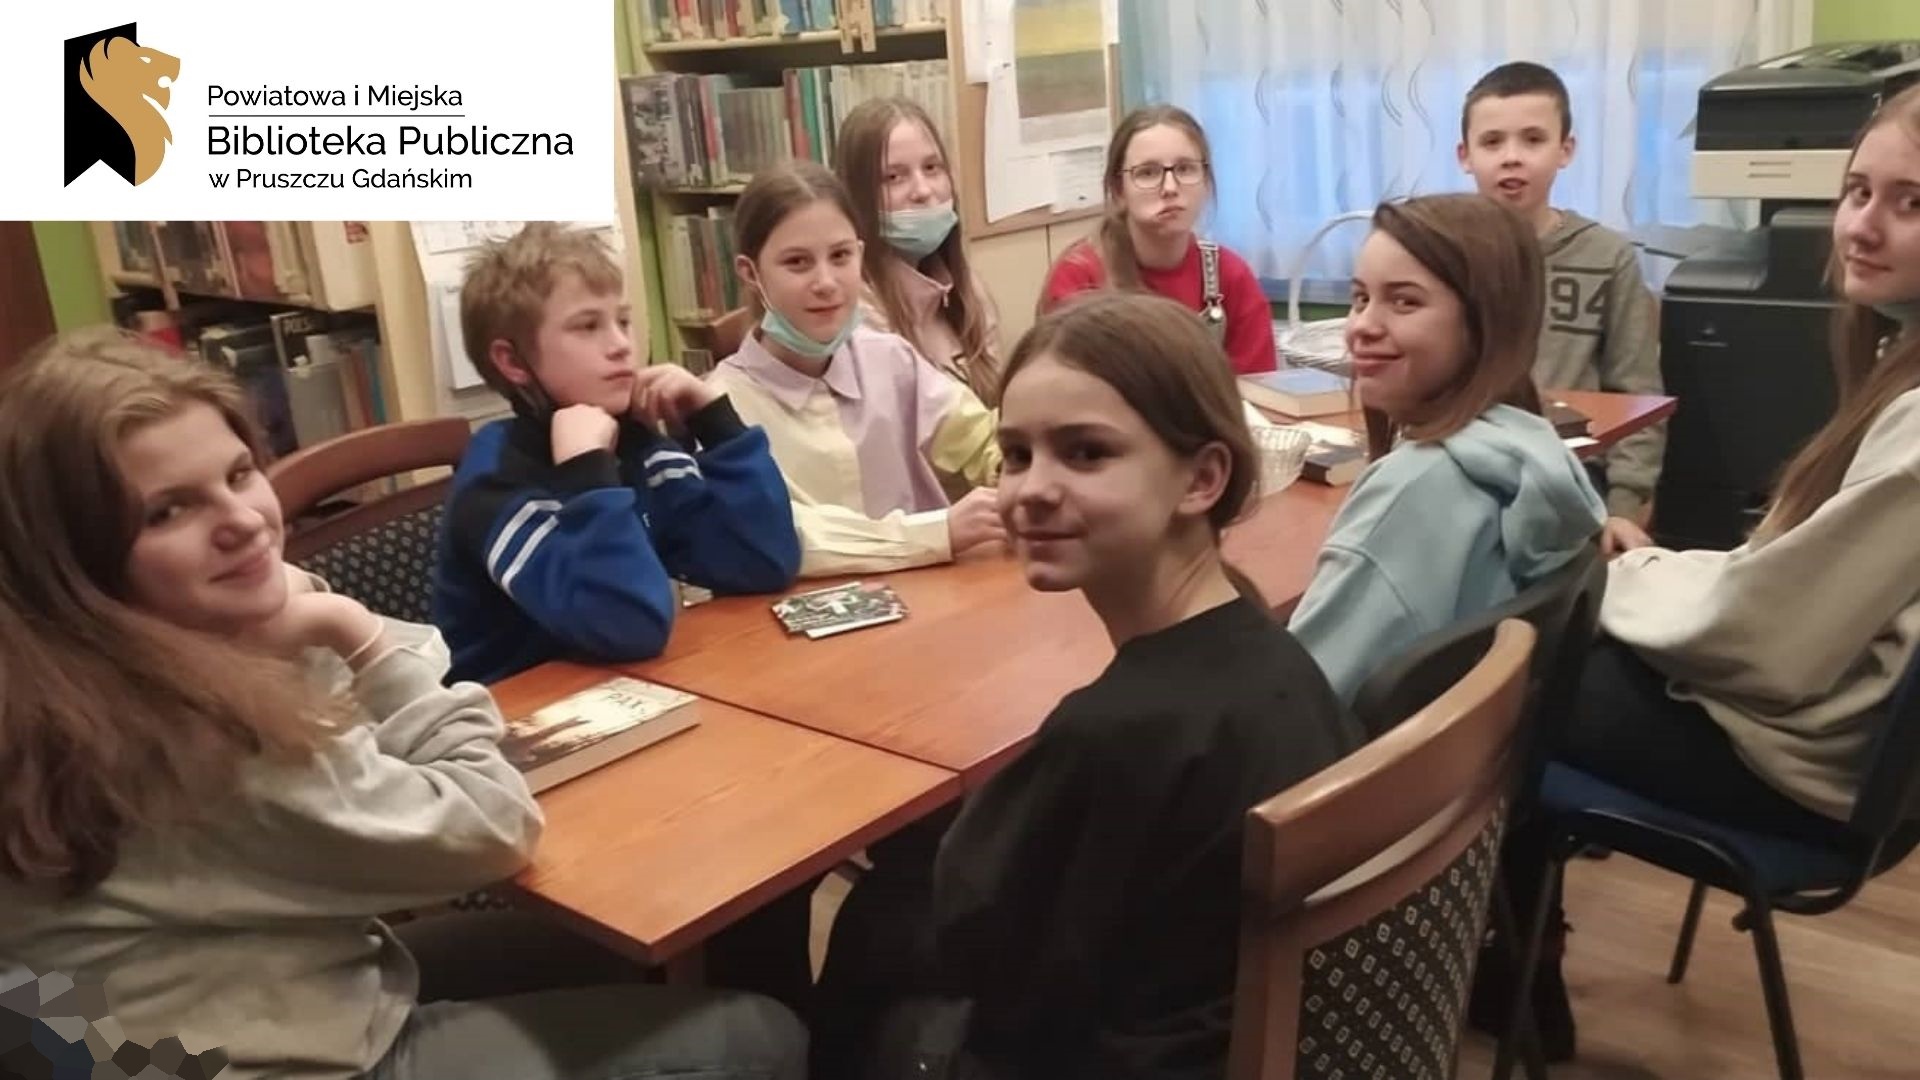 Dziewięcioro dzieci siedzi przy stole z twarzami zwróconymi w stronę osoby fotografującej. Logotoyp z napisem Powiatowa i Miejska Biblioteka Publiczna w Pruszczu Gdańskim.